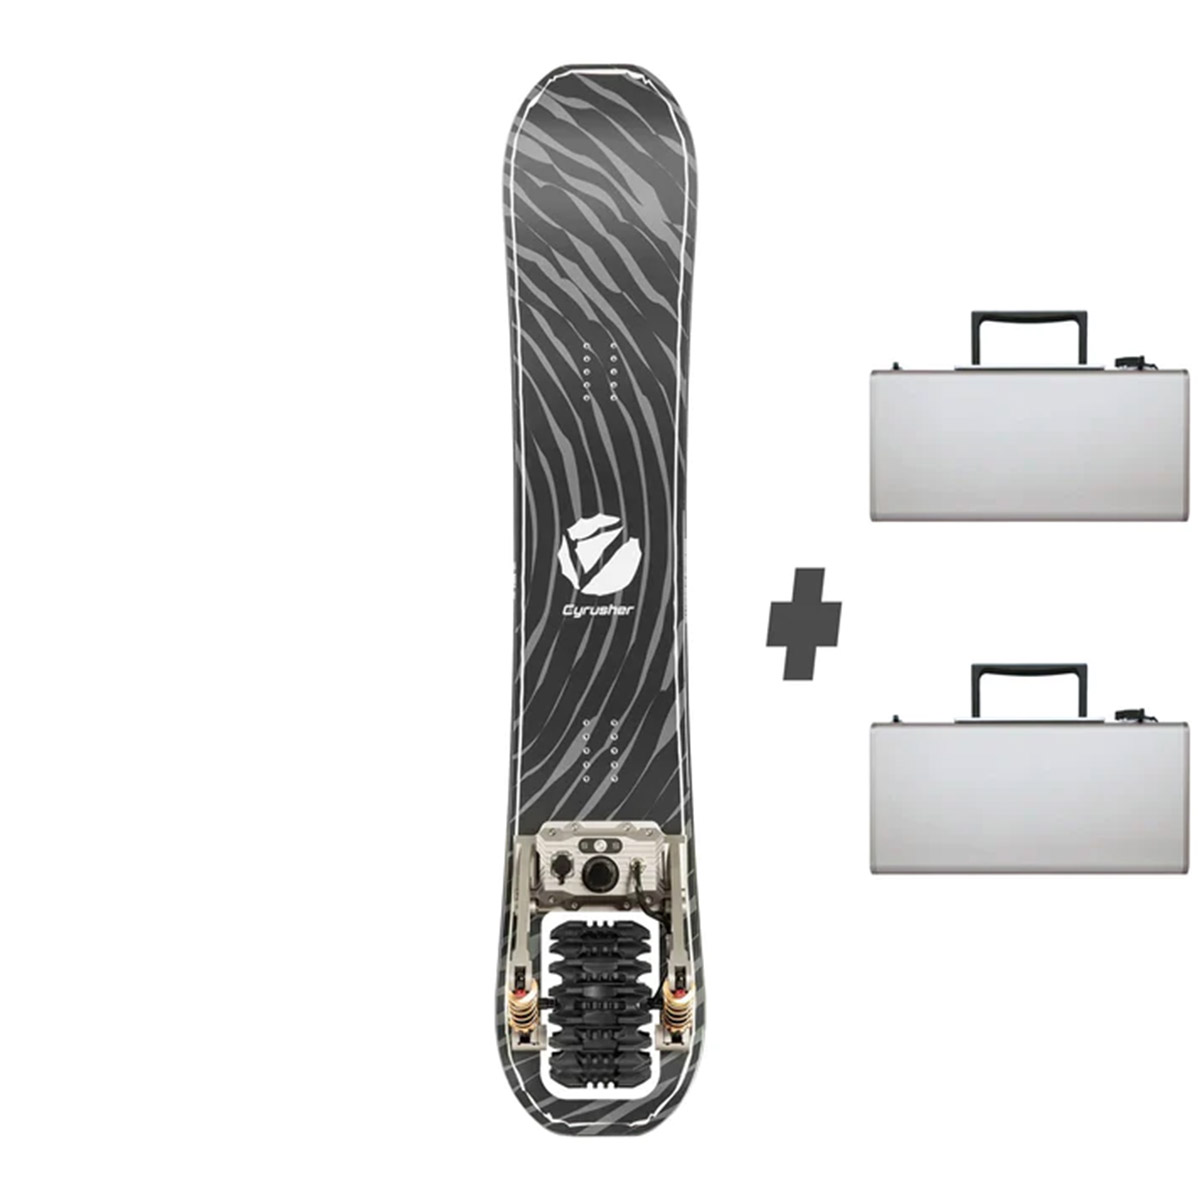 cyrusher ripple, la primera tabla de snowboard eléctrica del mundo para ‘surfear’ la nieve a 50 km/h